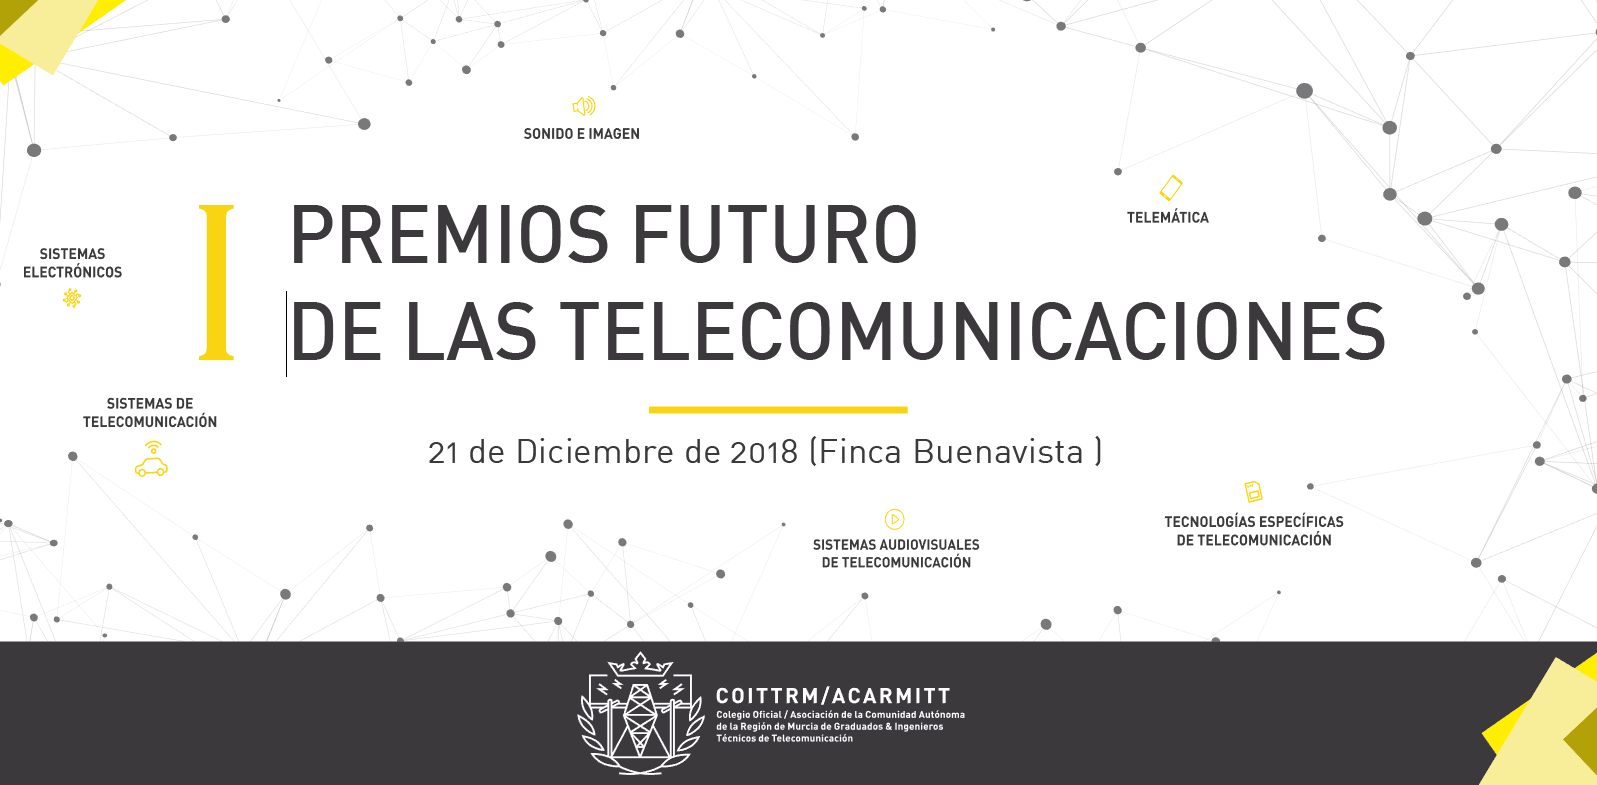 I PREMIOS FUTURO DE LAS TELECOMUNICACIONES